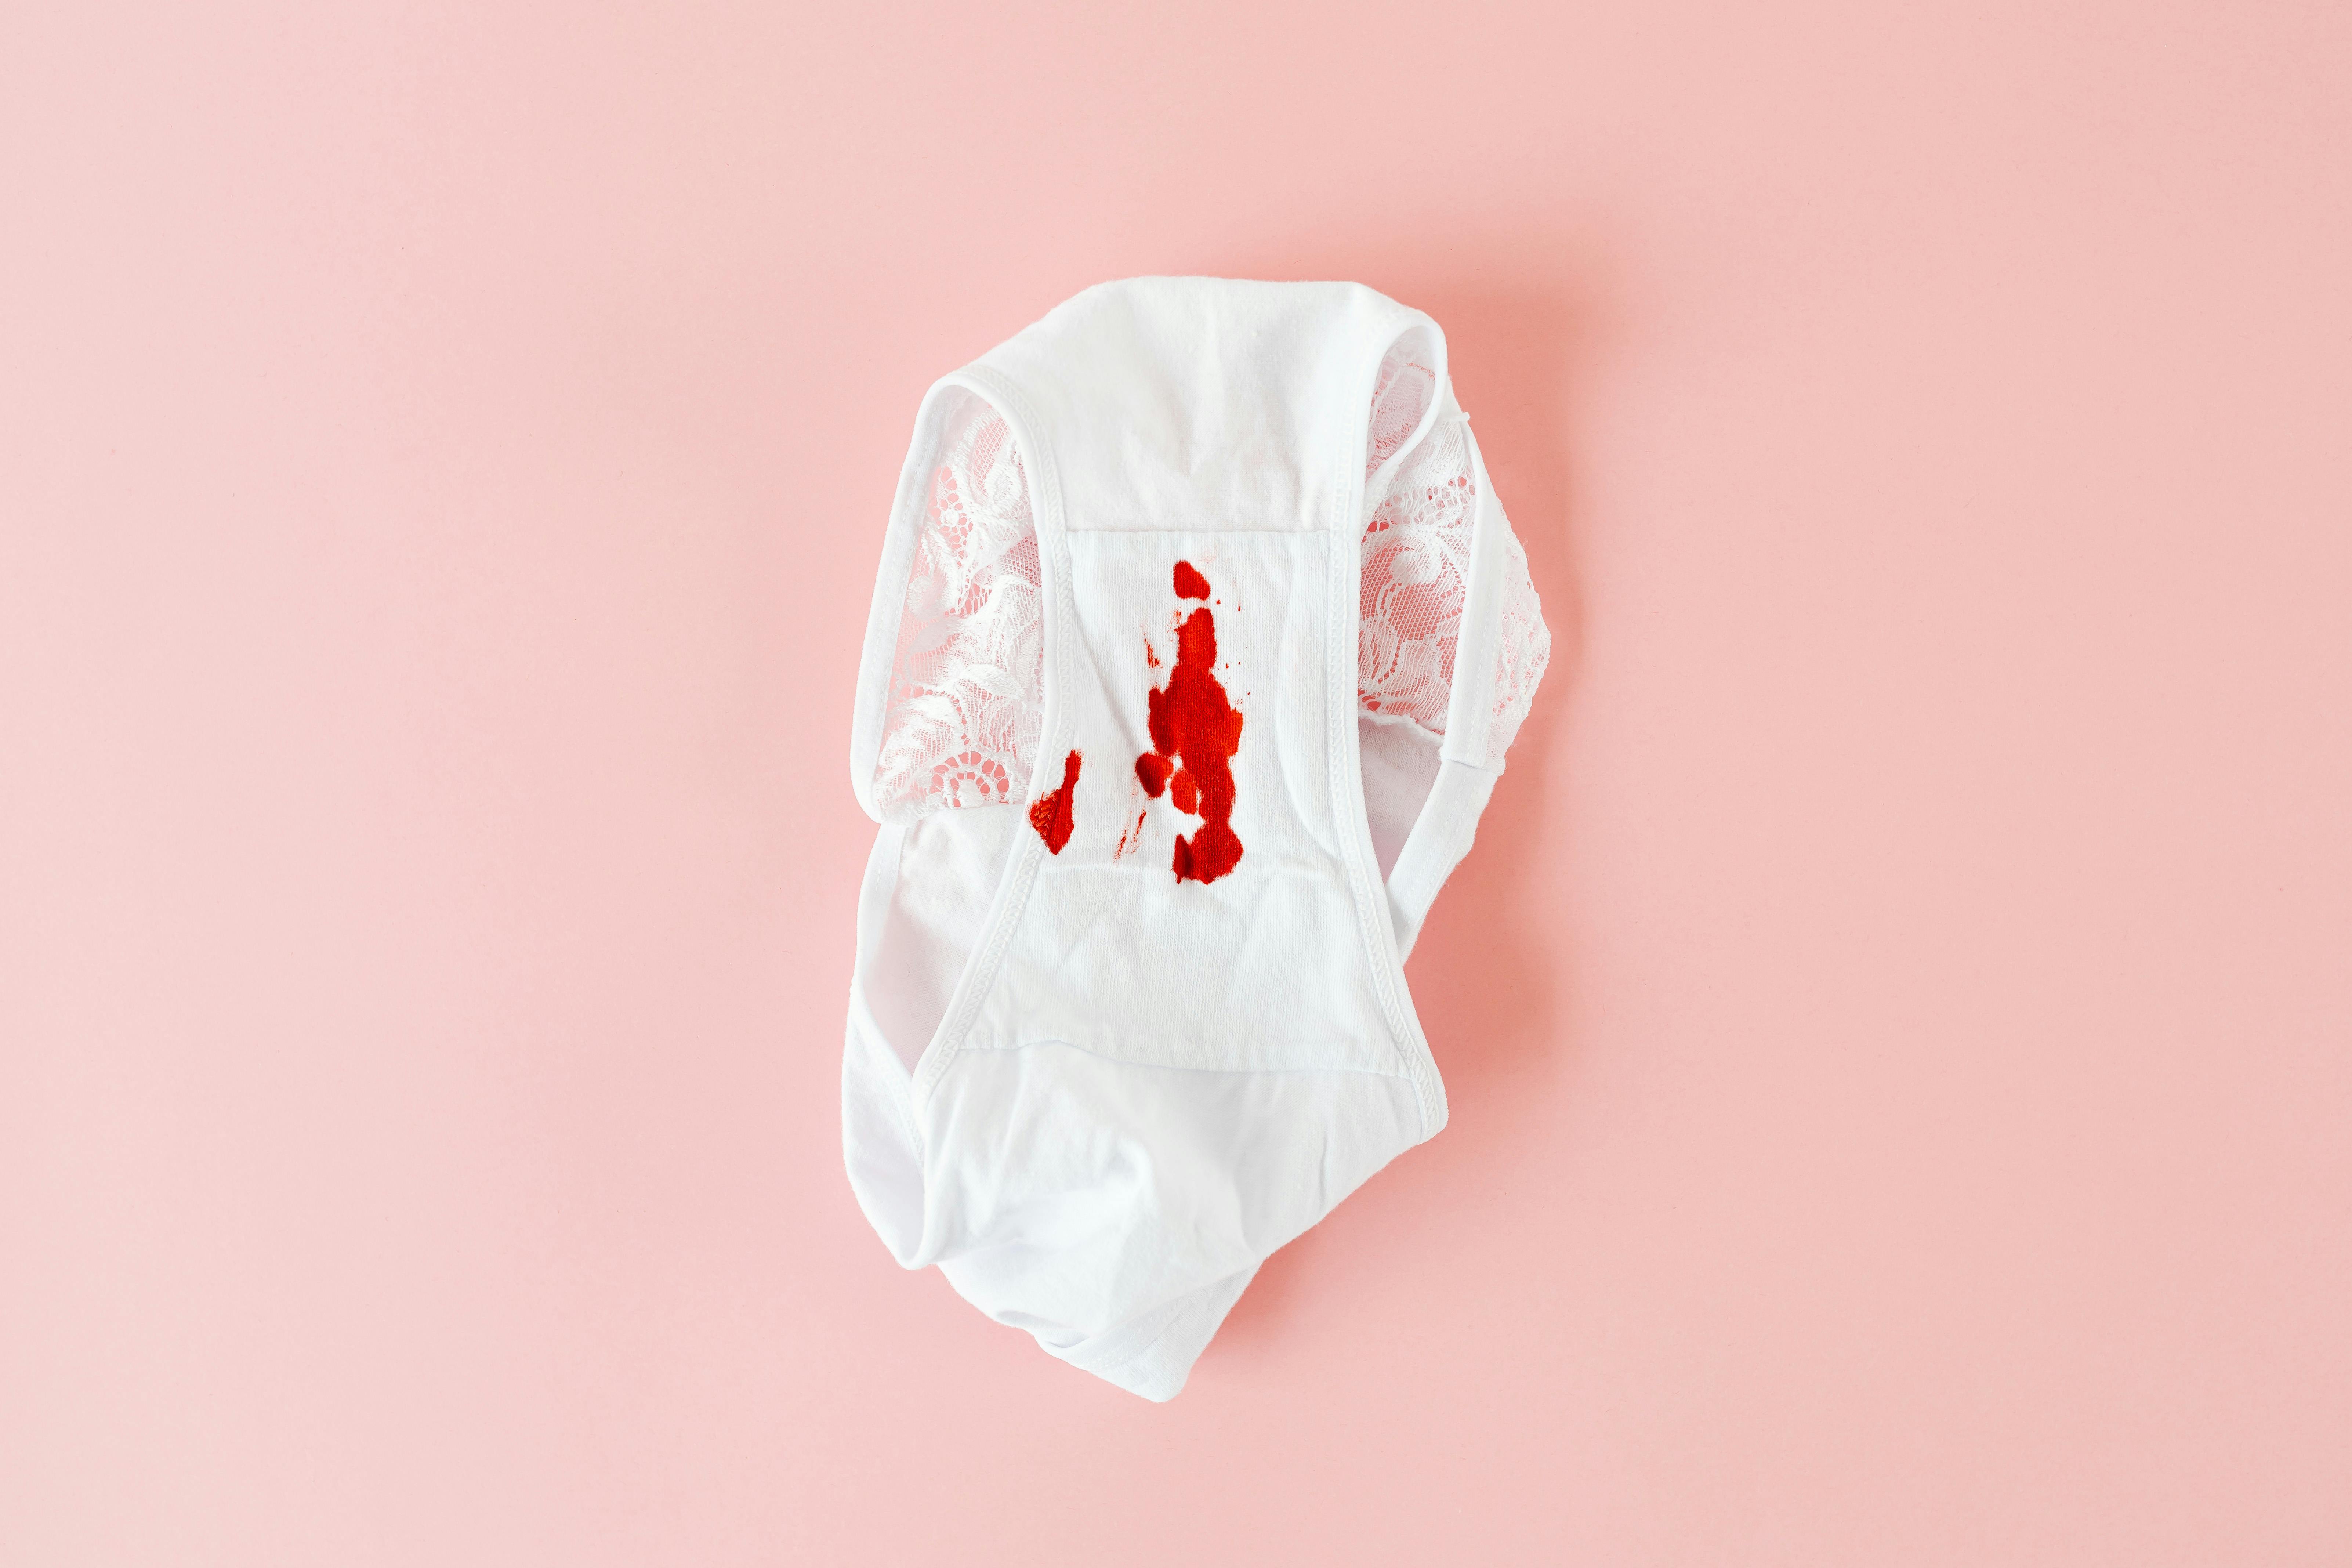 


<h3>Qu’est-ce qui rend les culottes menstruelles écologiques ?</h3>
<p>Les culottes menstruelles se distinguent comme une option <b>écologique</b> en raison de leur conception durable et réutilisable. Elles sont spécifiquement fabriquées pour être utilisées, lavées et réutilisées de nombreuses fois, réduisant ainsi la <b>quantité de déchets</b> générés par les produits menstruels à usage unique. En outre, les matériaux utilisés dans la fabrication des culottes menstruelles sont soigneusement sélectionnés pour assurer non seulement le confort et la fonctionnalité, mais aussi l’<b>éco-responsabilité</b>. Des tissus naturels, biologiques et hypoallergéniques sont souvent privilégiés, minimisant ainsi l’<i>impact environnemental</i> et les risques associés aux substances chimiques.</p>
<p>La <b>longévité</b> des culottes menstruelles est un autre aspect crucial qui renforce leur caractère écologique. Contrairement aux tampons et serviettes jetables qui sont utilisés une seule fois, les culottes menstruelles peuvent durer plusieurs années avec un entretien approprié. Cela se traduit par une réduction significative de la consommation de ressources et de la production de <i>déchets</i> au fil du temps, alignant davantage les culottes menstruelles avec les principes d’une vie <b>écologiquement consciente</b>.</p>
<h3>Comparaison avec les produits menstruels traditionnels</h3>
<p>Comparées aux produits menstruels traditionnels tels que les tampons et les serviettes, les culottes menstruelles manifestent un <b>avantage écologique</b> considérable. Les produits traditionnels, souvent fabriqués avec des plastiques et des produits chimiques, ont un impact négatif sur l’environnement, tant au niveau de la production qu’après leur utilisation sous forme de <i>déchets</i>. Les culottes menstruelles, en revanche, minimisent cet impact en raison de leur réutilisabilité et de l’utilisation de matériaux plus <b>sains</b> et <b>durables</b>.</p>
<p>L’analyse du cycle de vie des produits offre une perspective révélatrice. Les culottes menstruelles, avec leur capacité de réutilisation, ont un cycle de vie plus long, ce qui réduit leur <b>empreinte globale</b>. En contraste, le besoin constant de renouvellement des produits menstruels traditionnels amplifie leur empreinte écologique, engendrant une accumulation continuelle de produits <i>non biodégradables</i> dans l’environnement et contribuant ainsi à la pollution et aux déchets mondiaux.</p>
<p> » /><br />
Pour vraiment saisir l’<b>impact écologique</b> des culottes menstruelles, il est essentiel de plonger dans les divers aspects qui contribuent à leur empreinte environnementale. Contrairement aux produits menstruels jetables, les culottes menstruelles offrent une <b><a href=